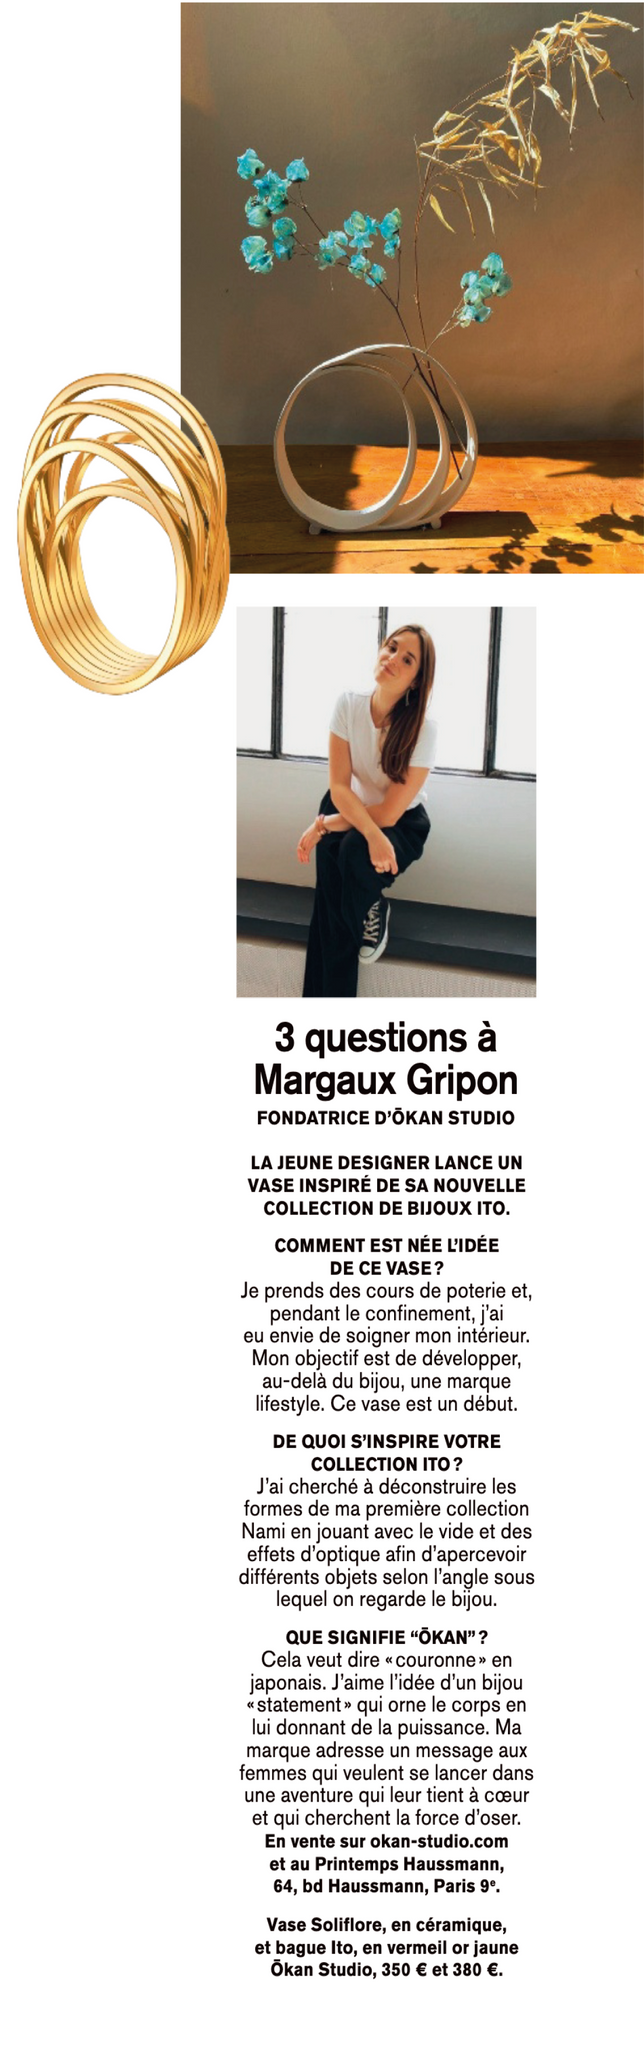 Marie Claire - 3 questions à Margaux Gripon